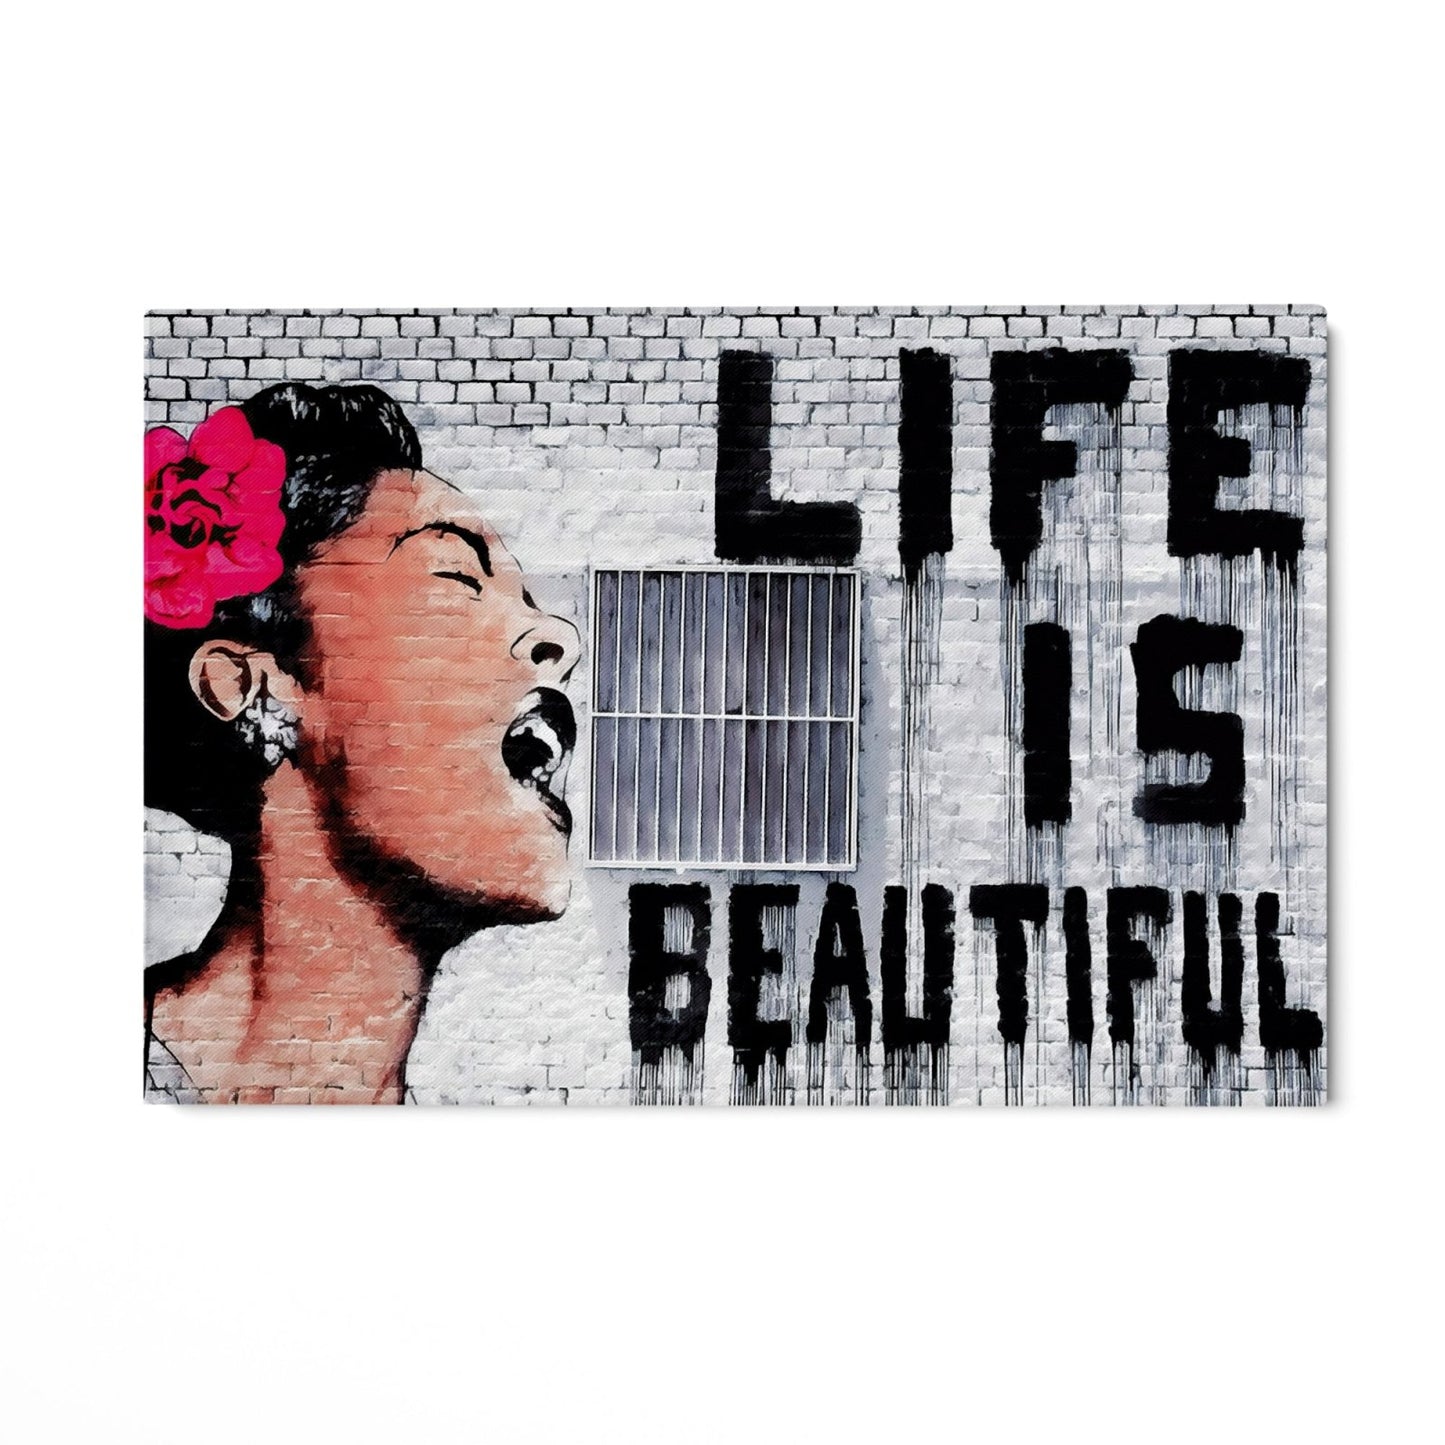 Livet är vackert, Banksy